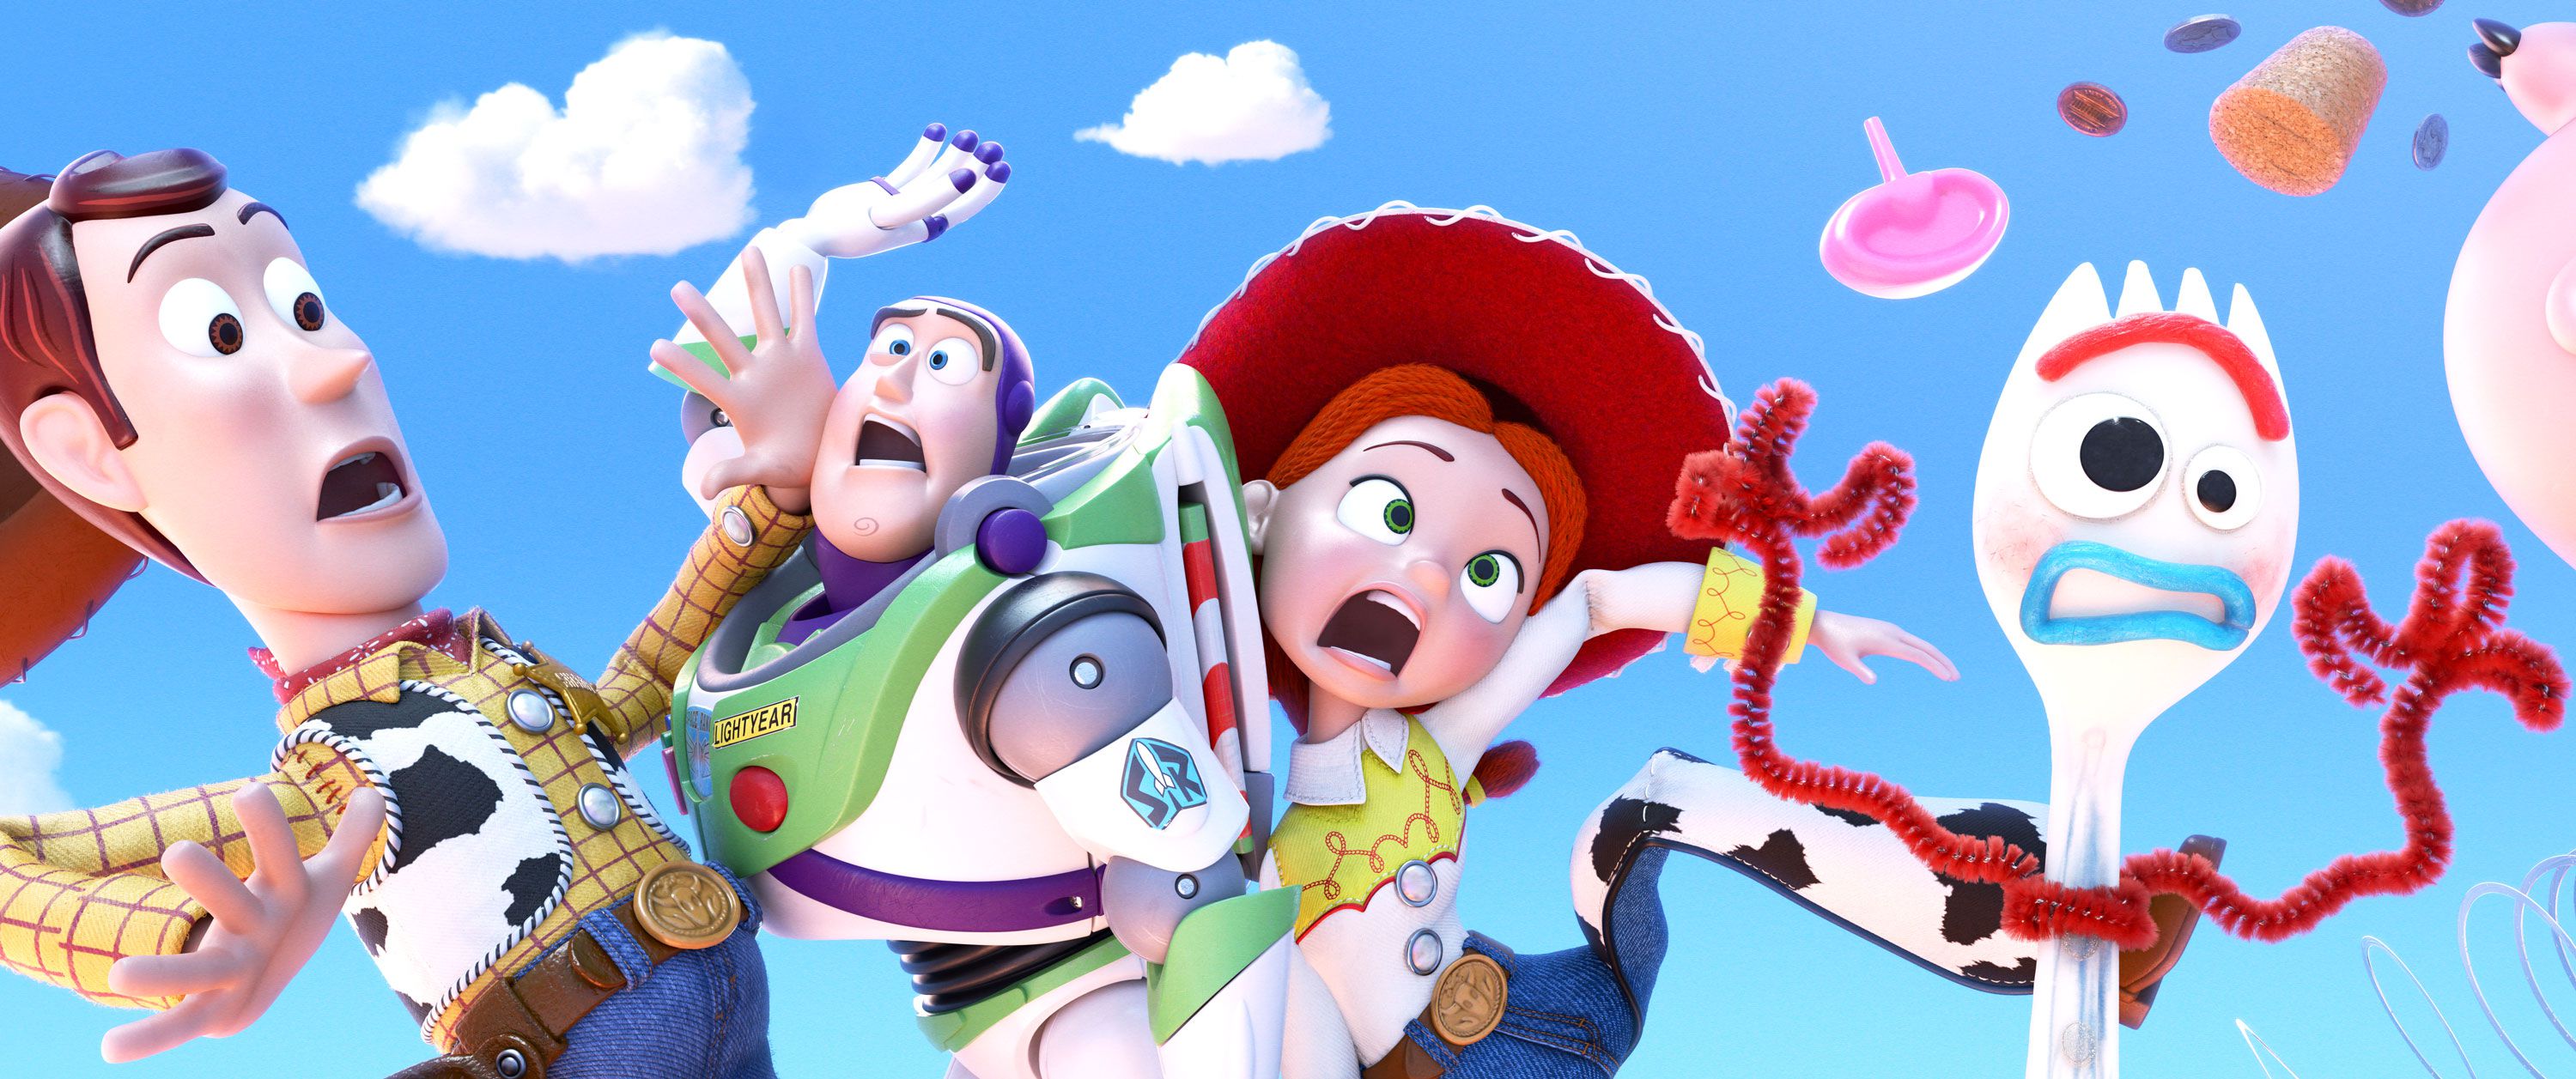 Ecco il trailer di Toy Story 4 mostrato durante il Super Bowl